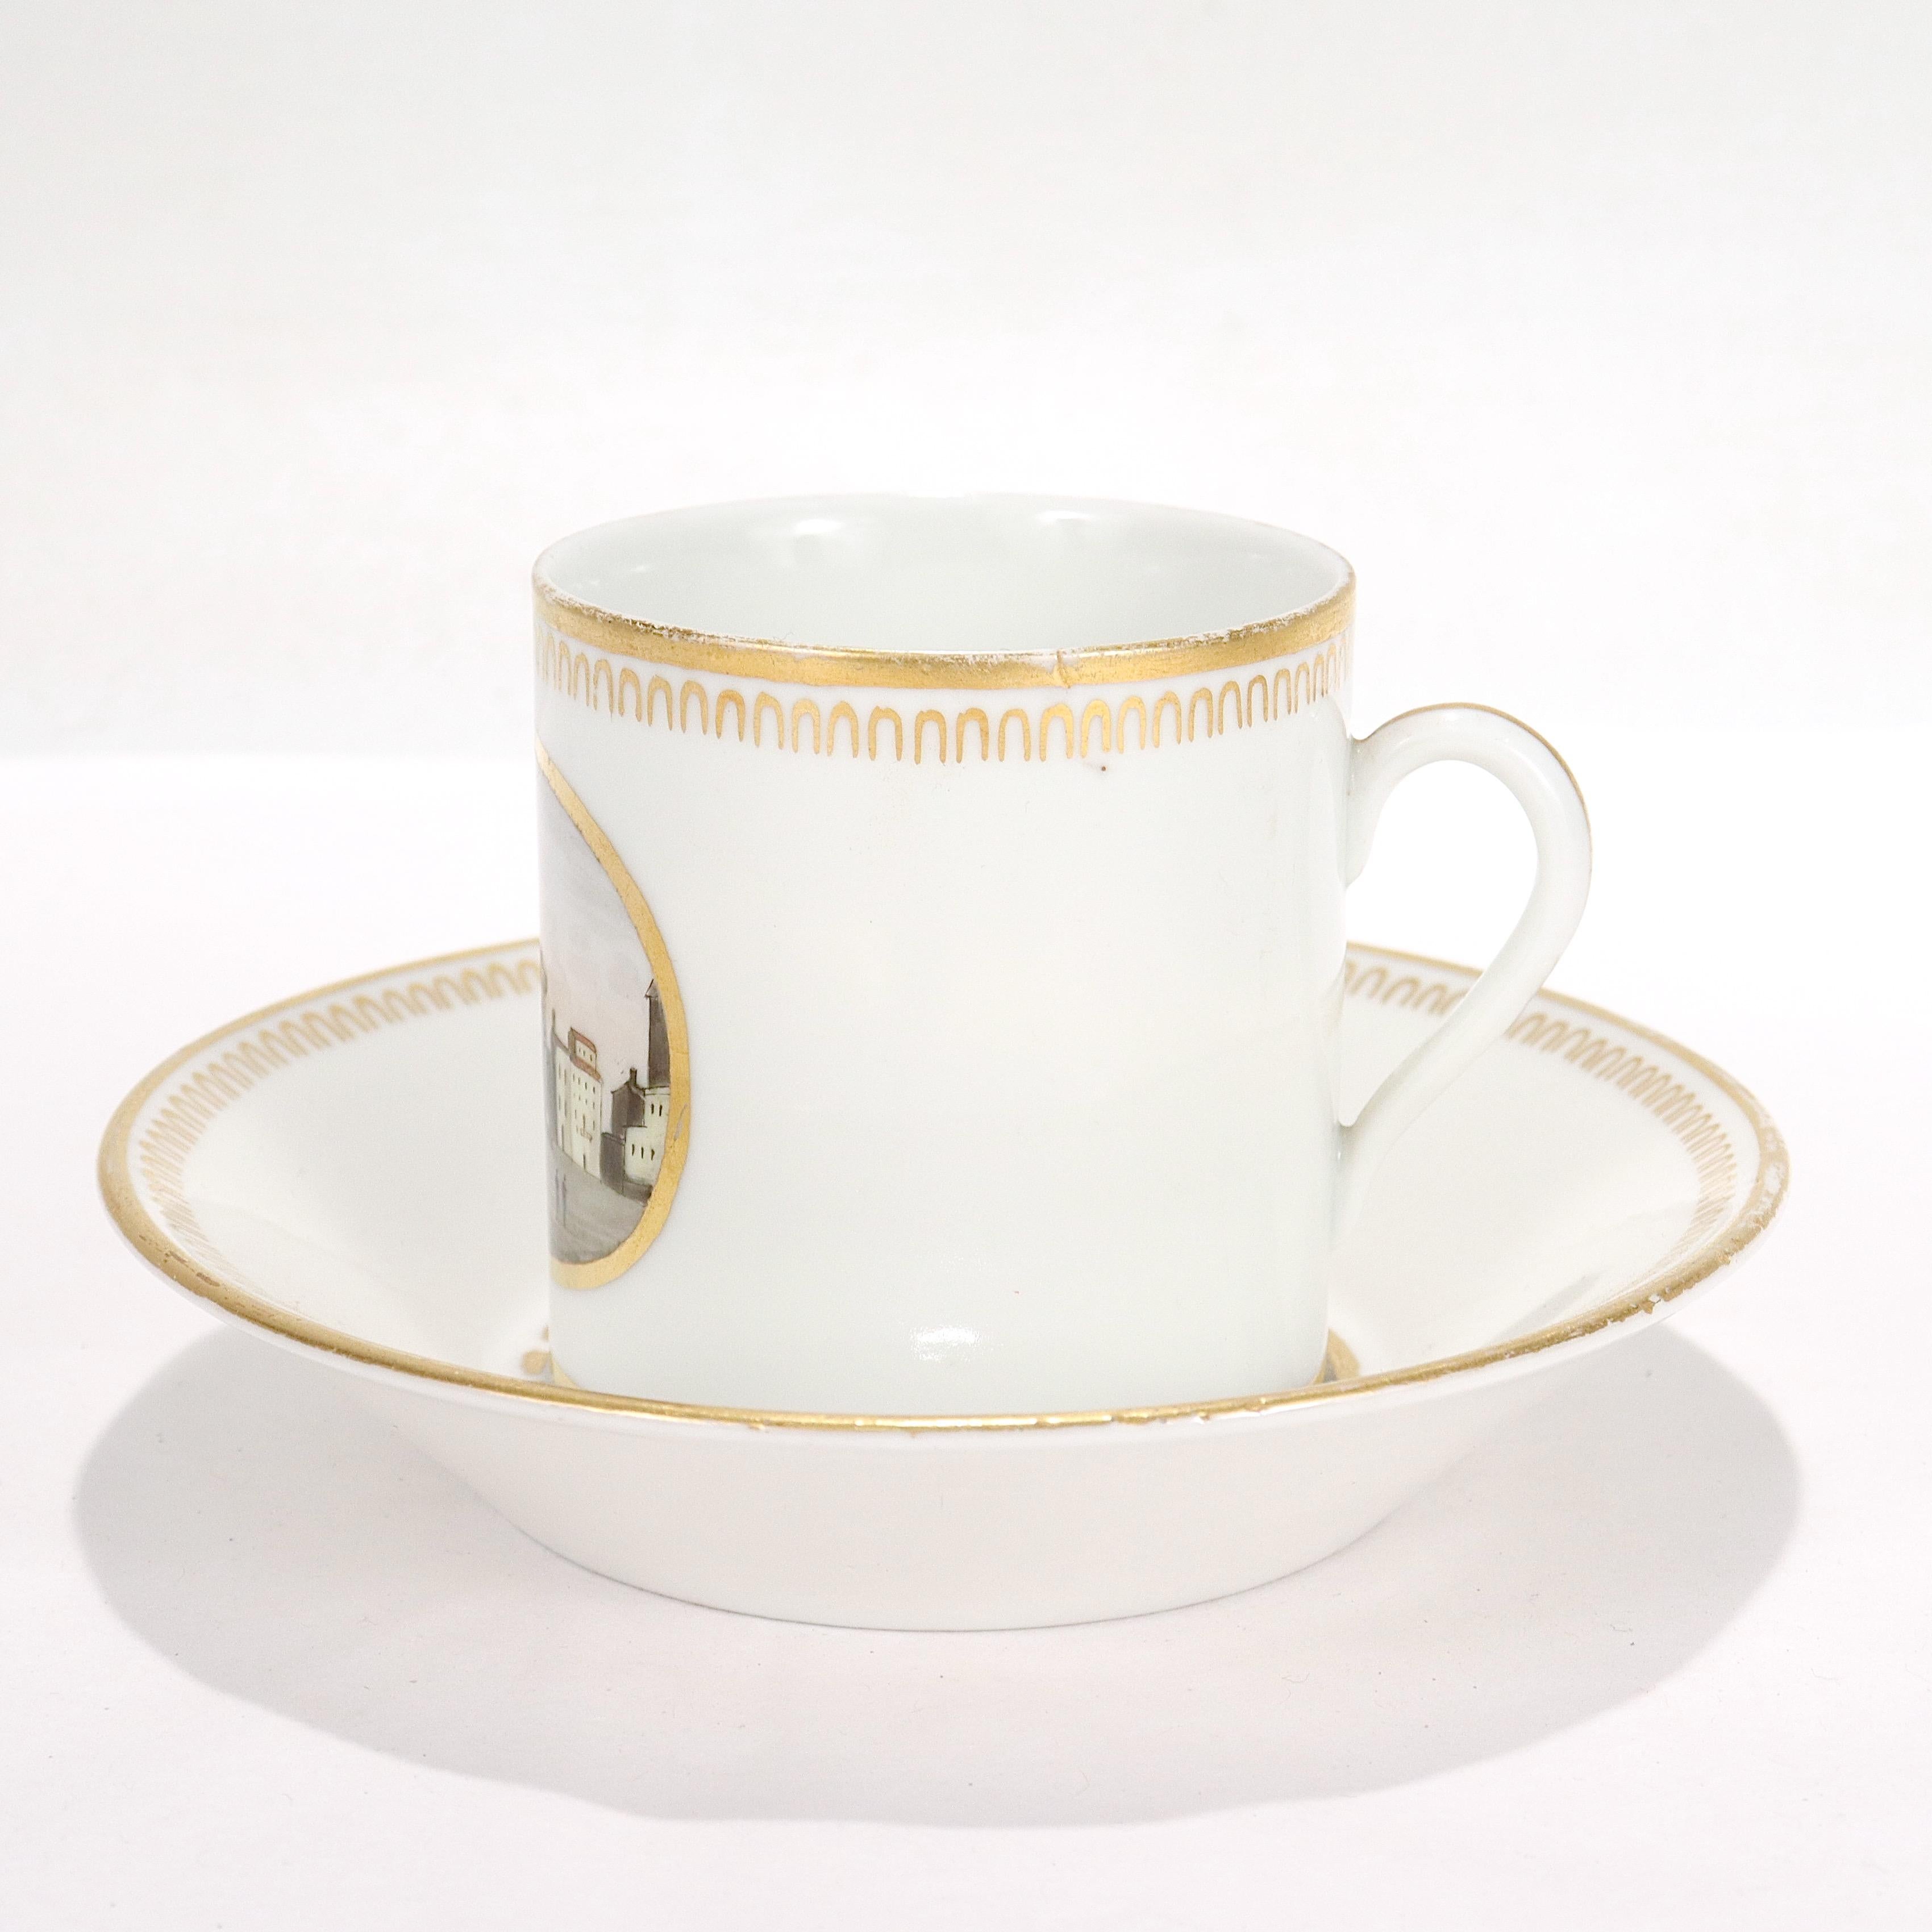 Nous vous proposons une tasse et une soucoupe anciennes en porcelaine topographique.

Fabrique de porcelaine Doccia, vers 1820.

Avec des scènes topographiques en émail peint : la tasse représentant la 